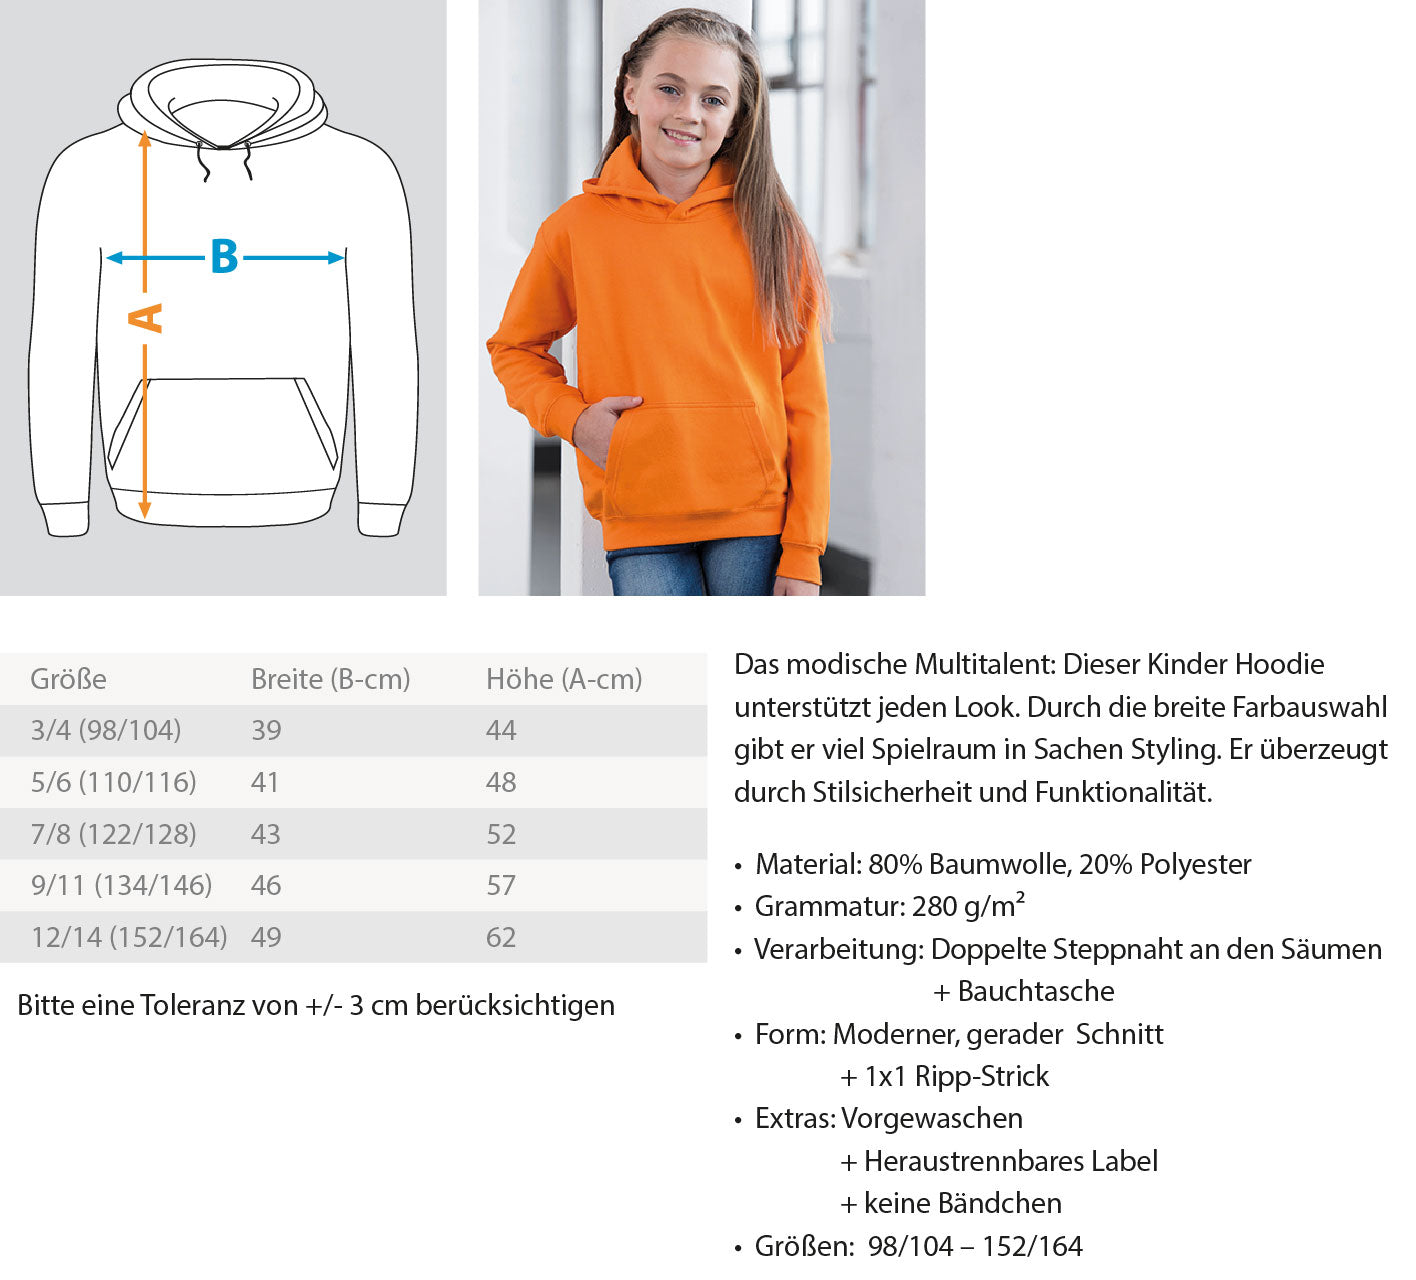 Zeigt easy dude buddha chillin vintage sunset kinder hoodie in Farbe Jet Schwarz